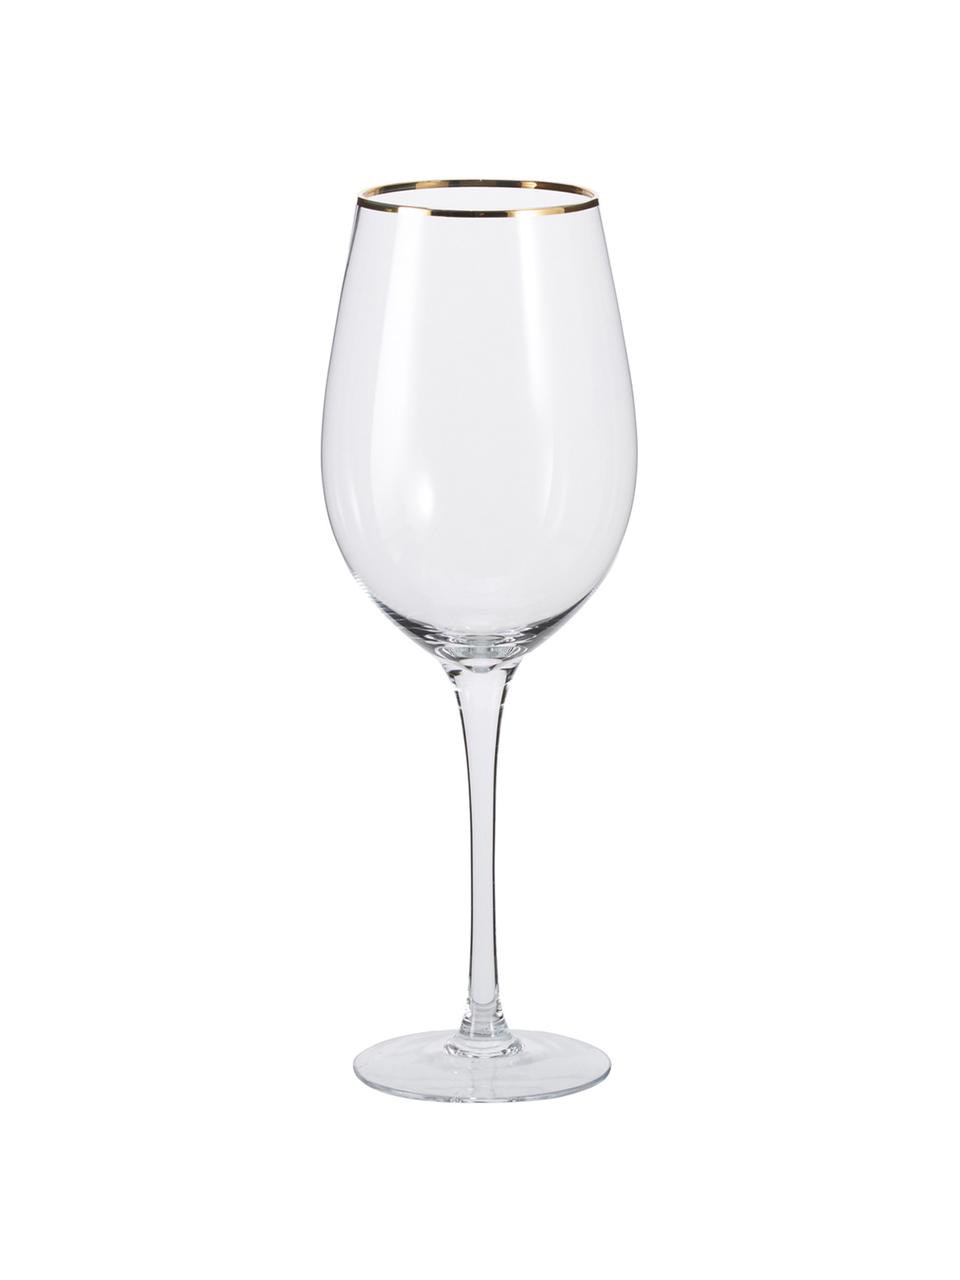 Copas de vino Chloe, 4 uds., Vidrio, Transparente, dorado, Ø 9 x Al 26 cm